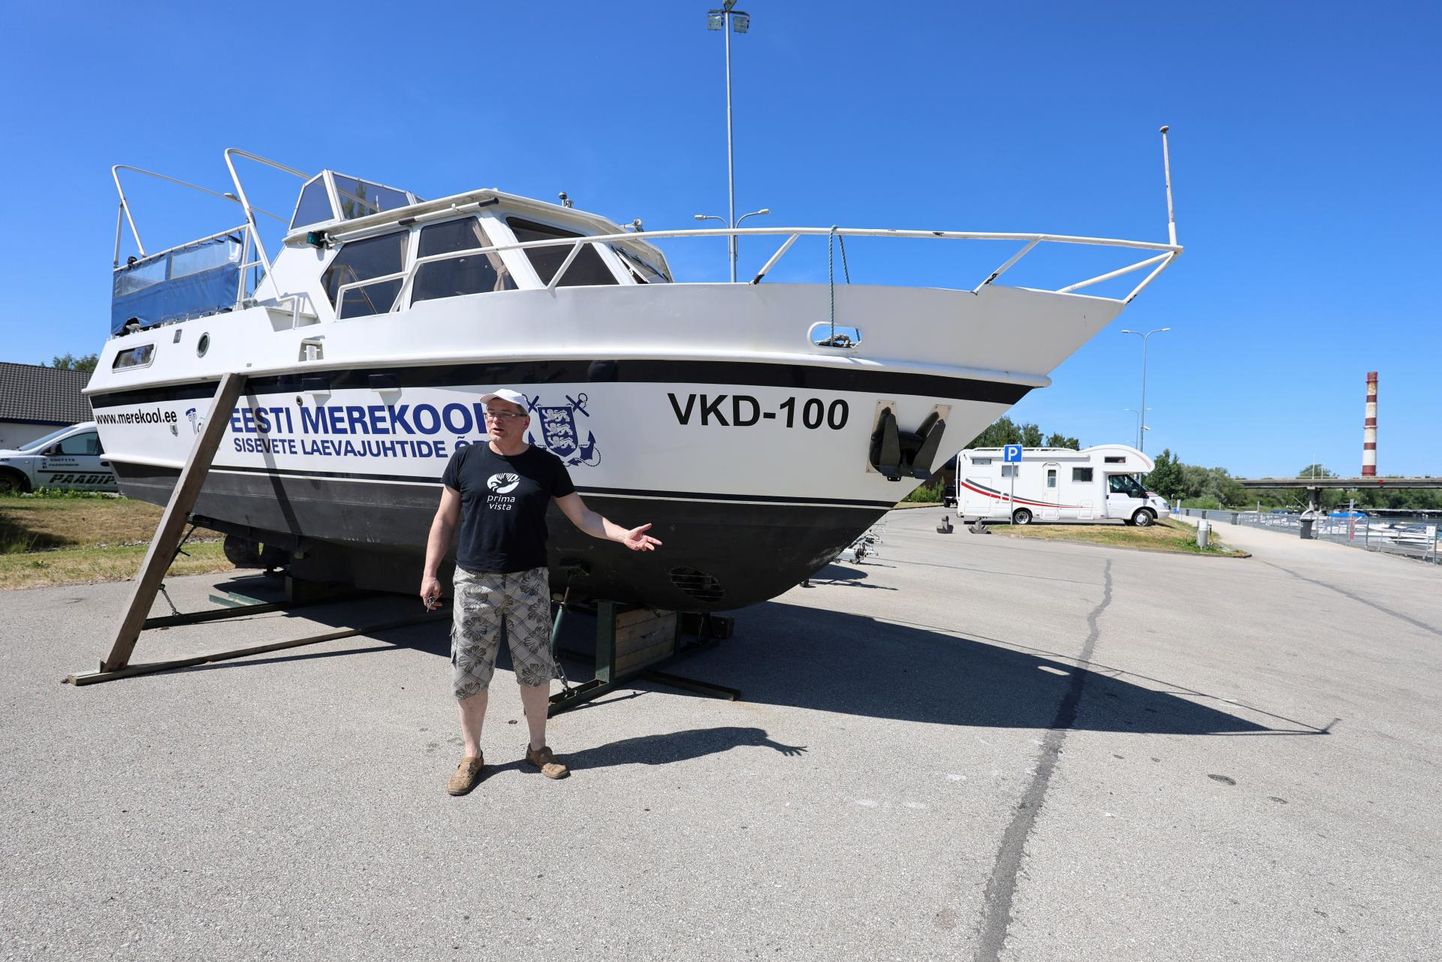 Esmaspäeval ootas õppelaev Eesti merekooli Tartu filiaali juhatajat Indrek Särge veel Karlova sadamas. Tänase veeskamise eel oli tarvis teha veel mõned väiksemad hooldustööd.